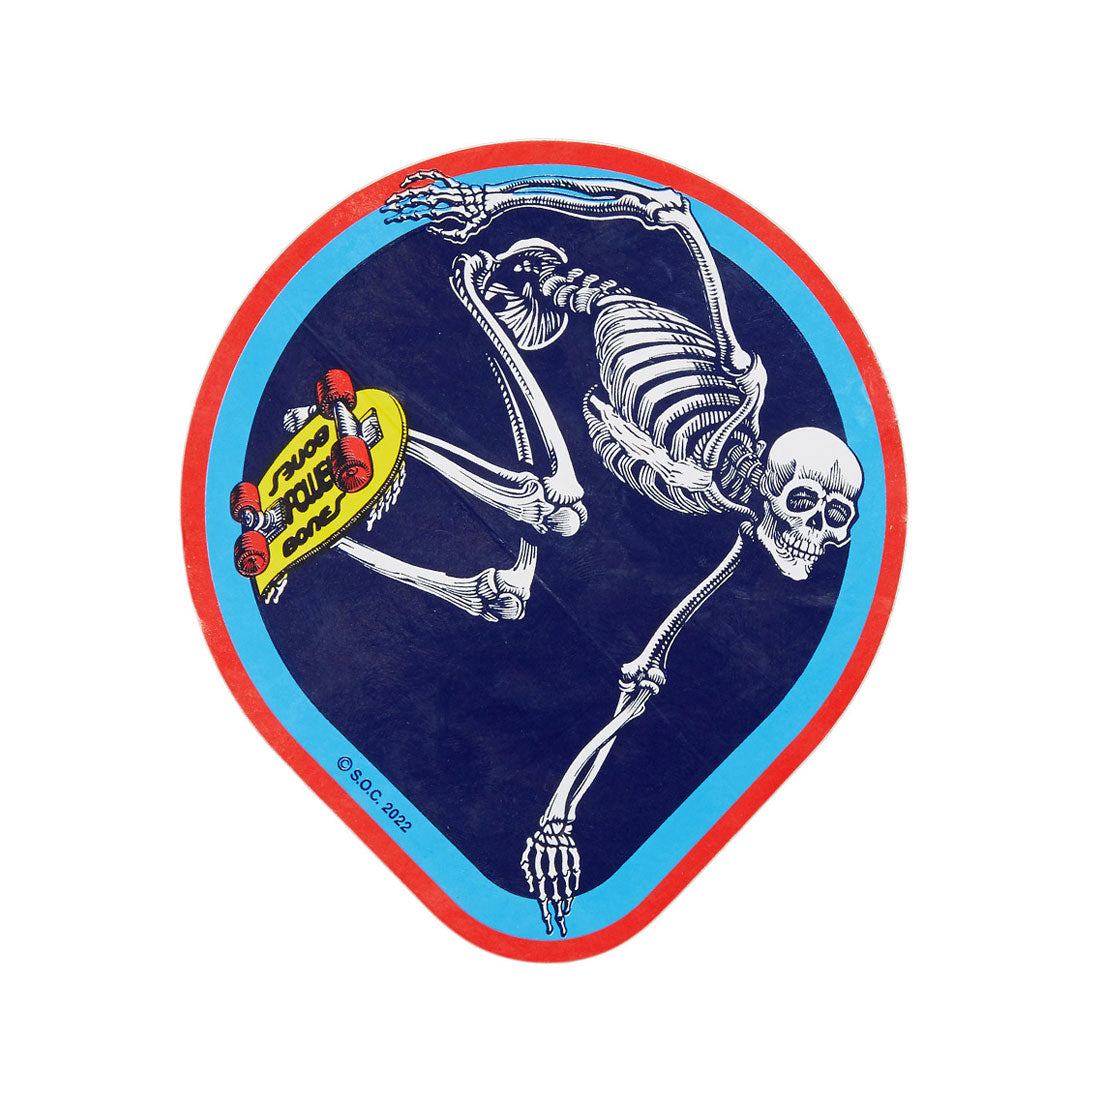 Powell Peralta OG Skateboarding Skeleton Sticker Stickers